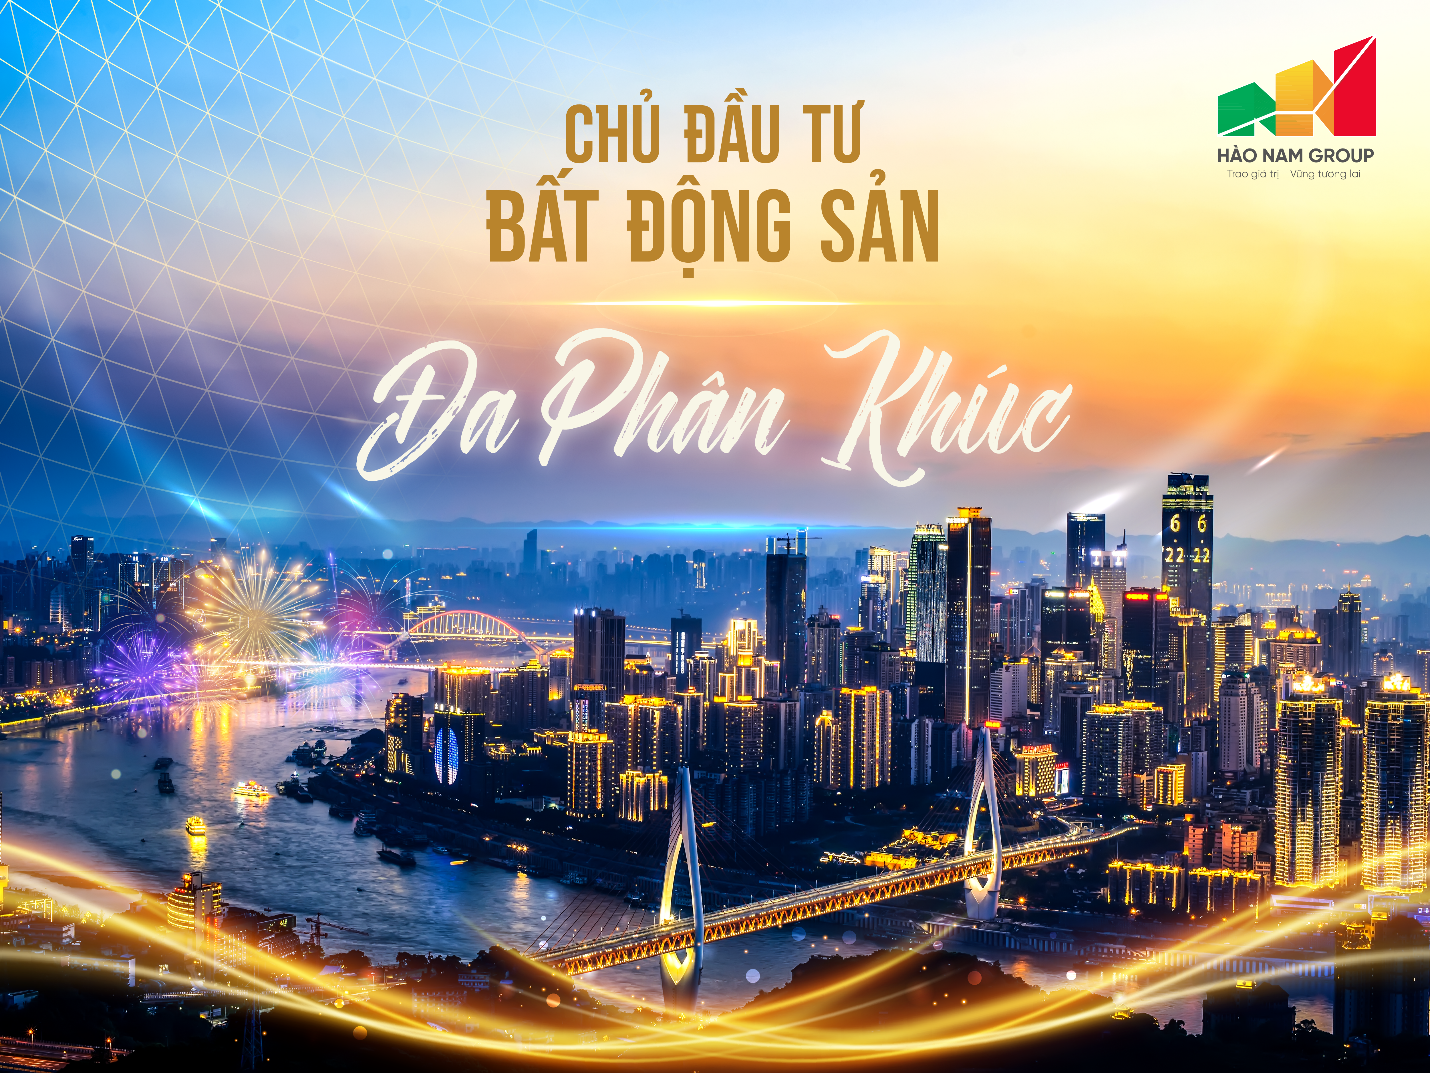 Hào Nam Group – Nhân tố mới trên thị trường bất động sản miền Bắc - Ảnh 1.